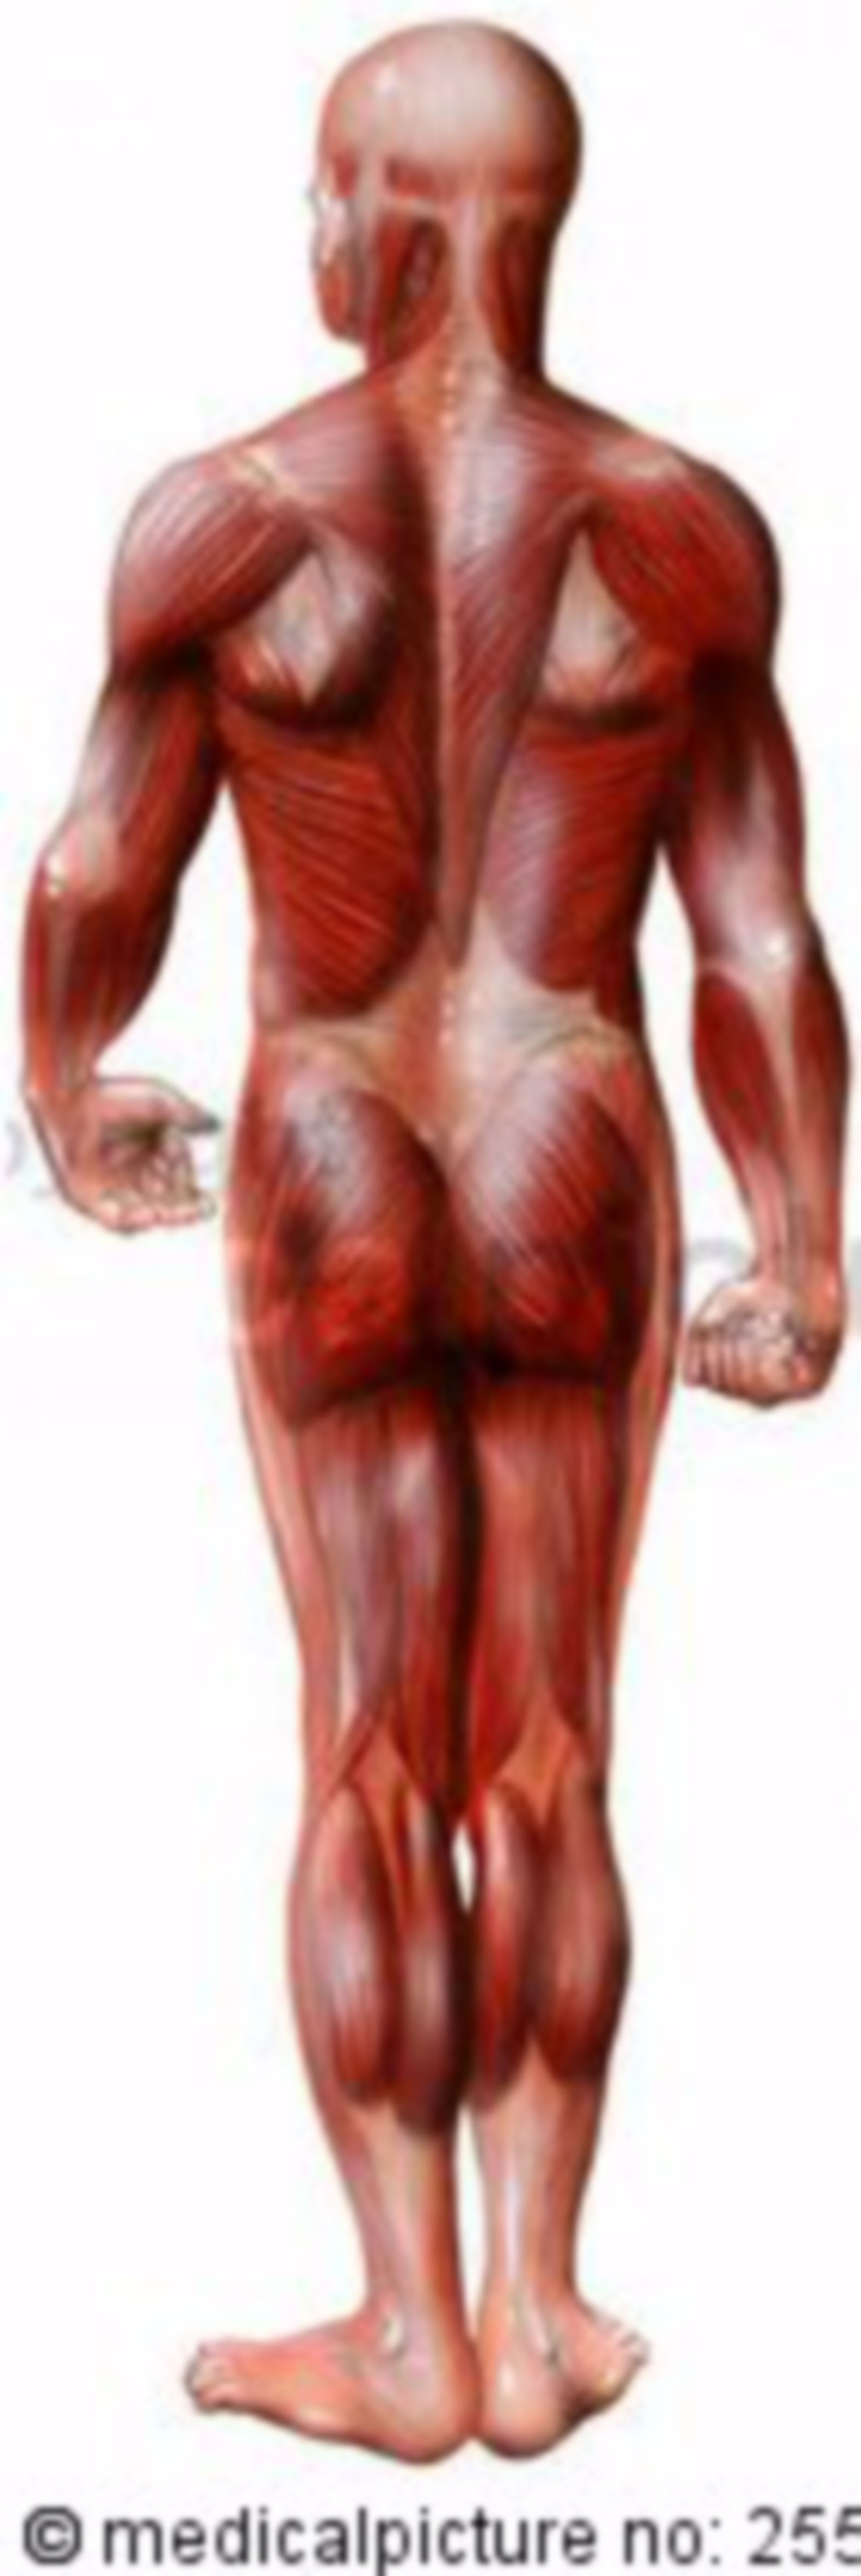 Human skeletal muscles